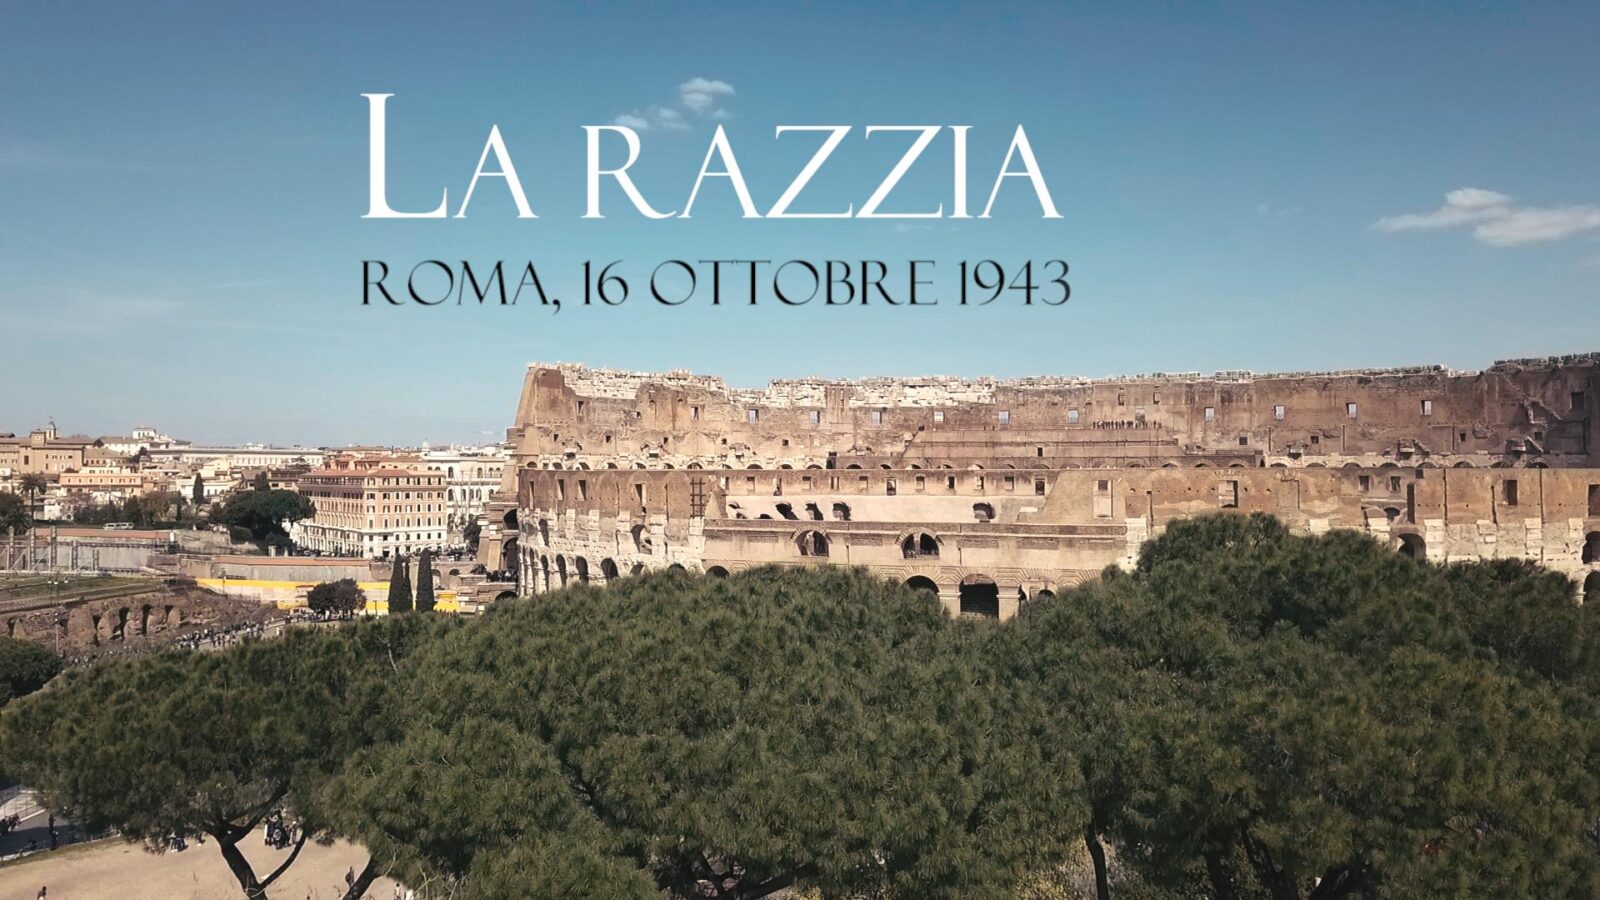 La Razzia – Roma, 16 ottobre 1943